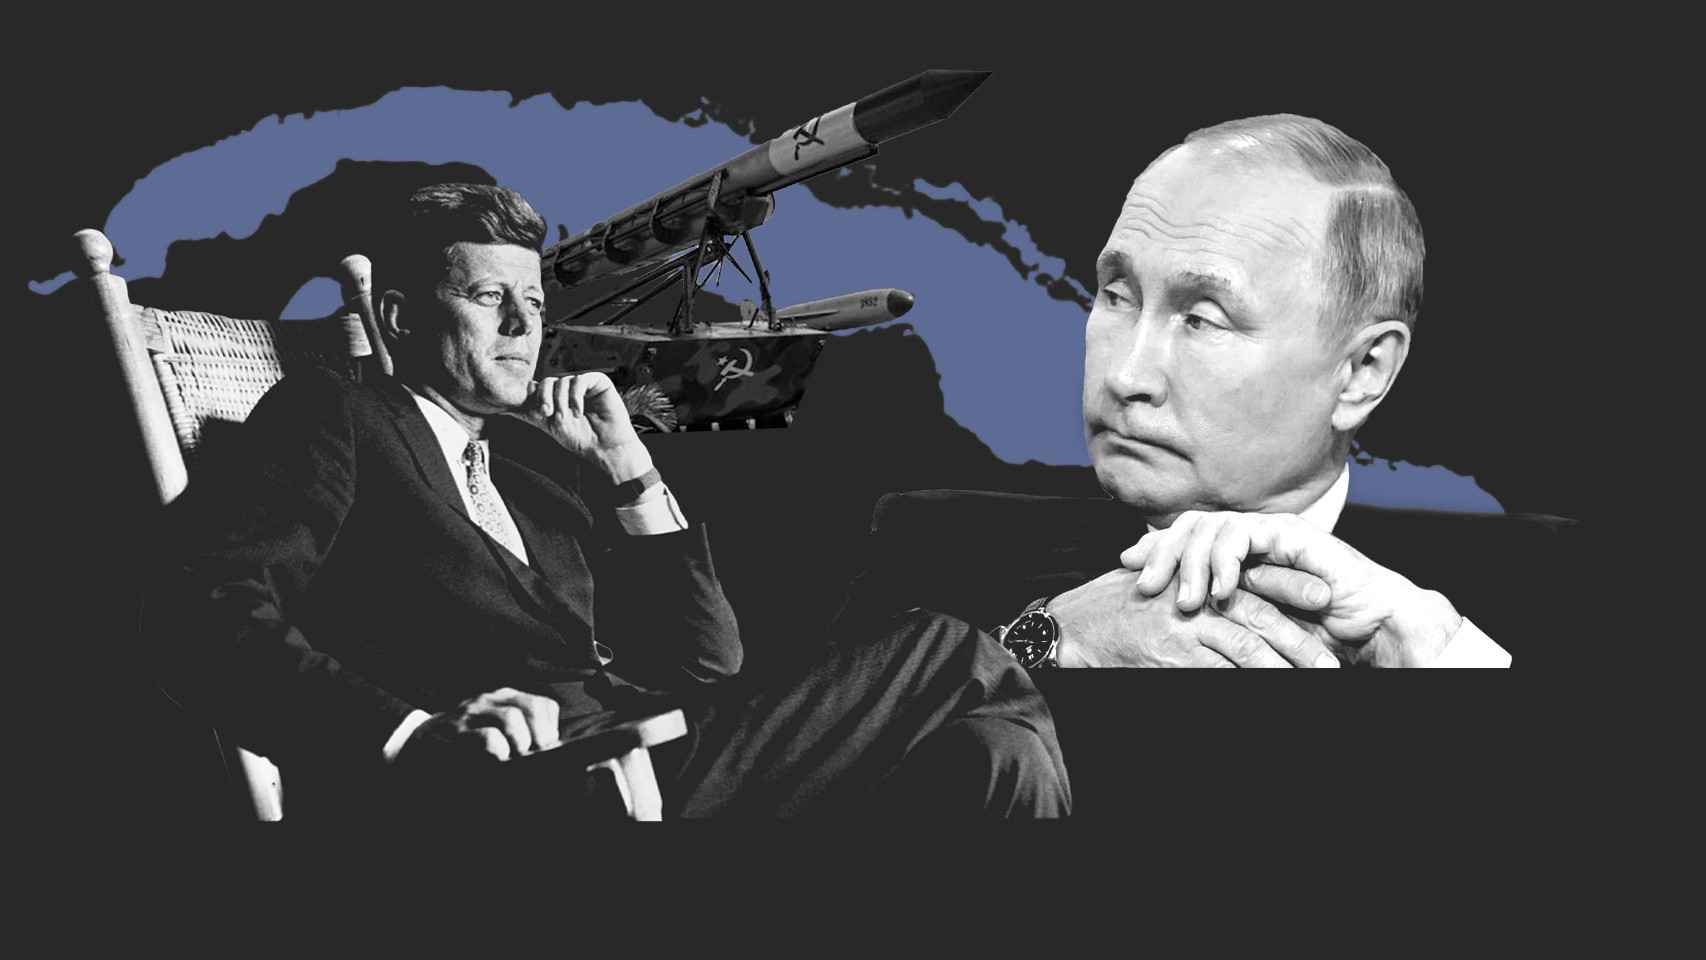 Montaje de la crisis de los misiles con ilustraciones de Kennedy y Putin.